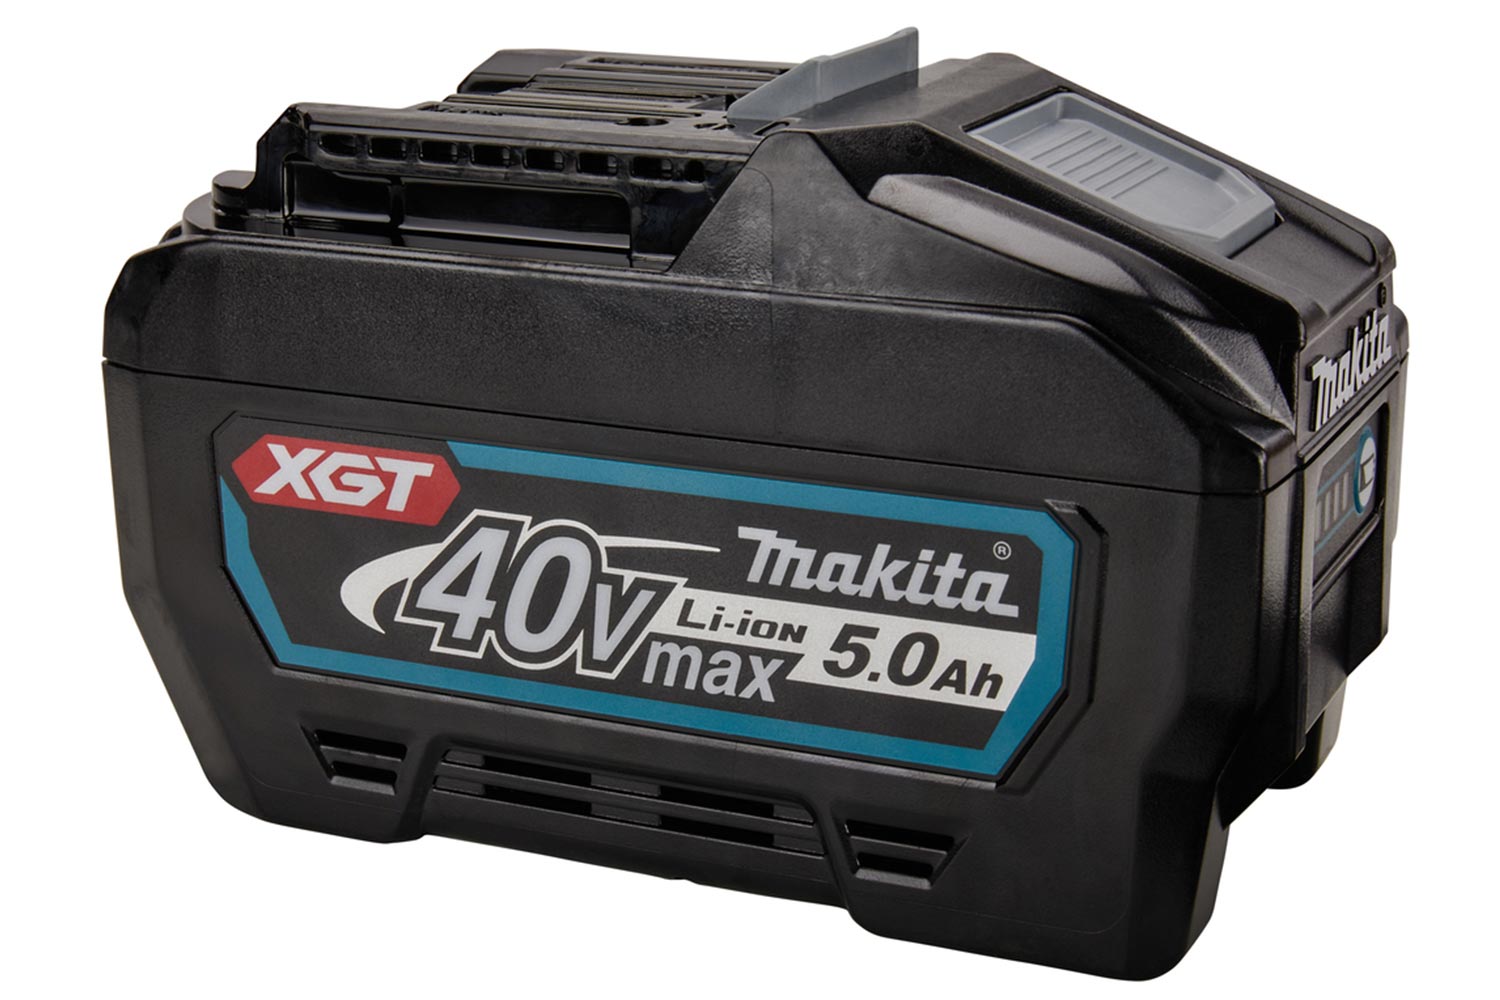 Makita - Product Details - BL4050F 40Vmax XGT 5.0Ah Battery